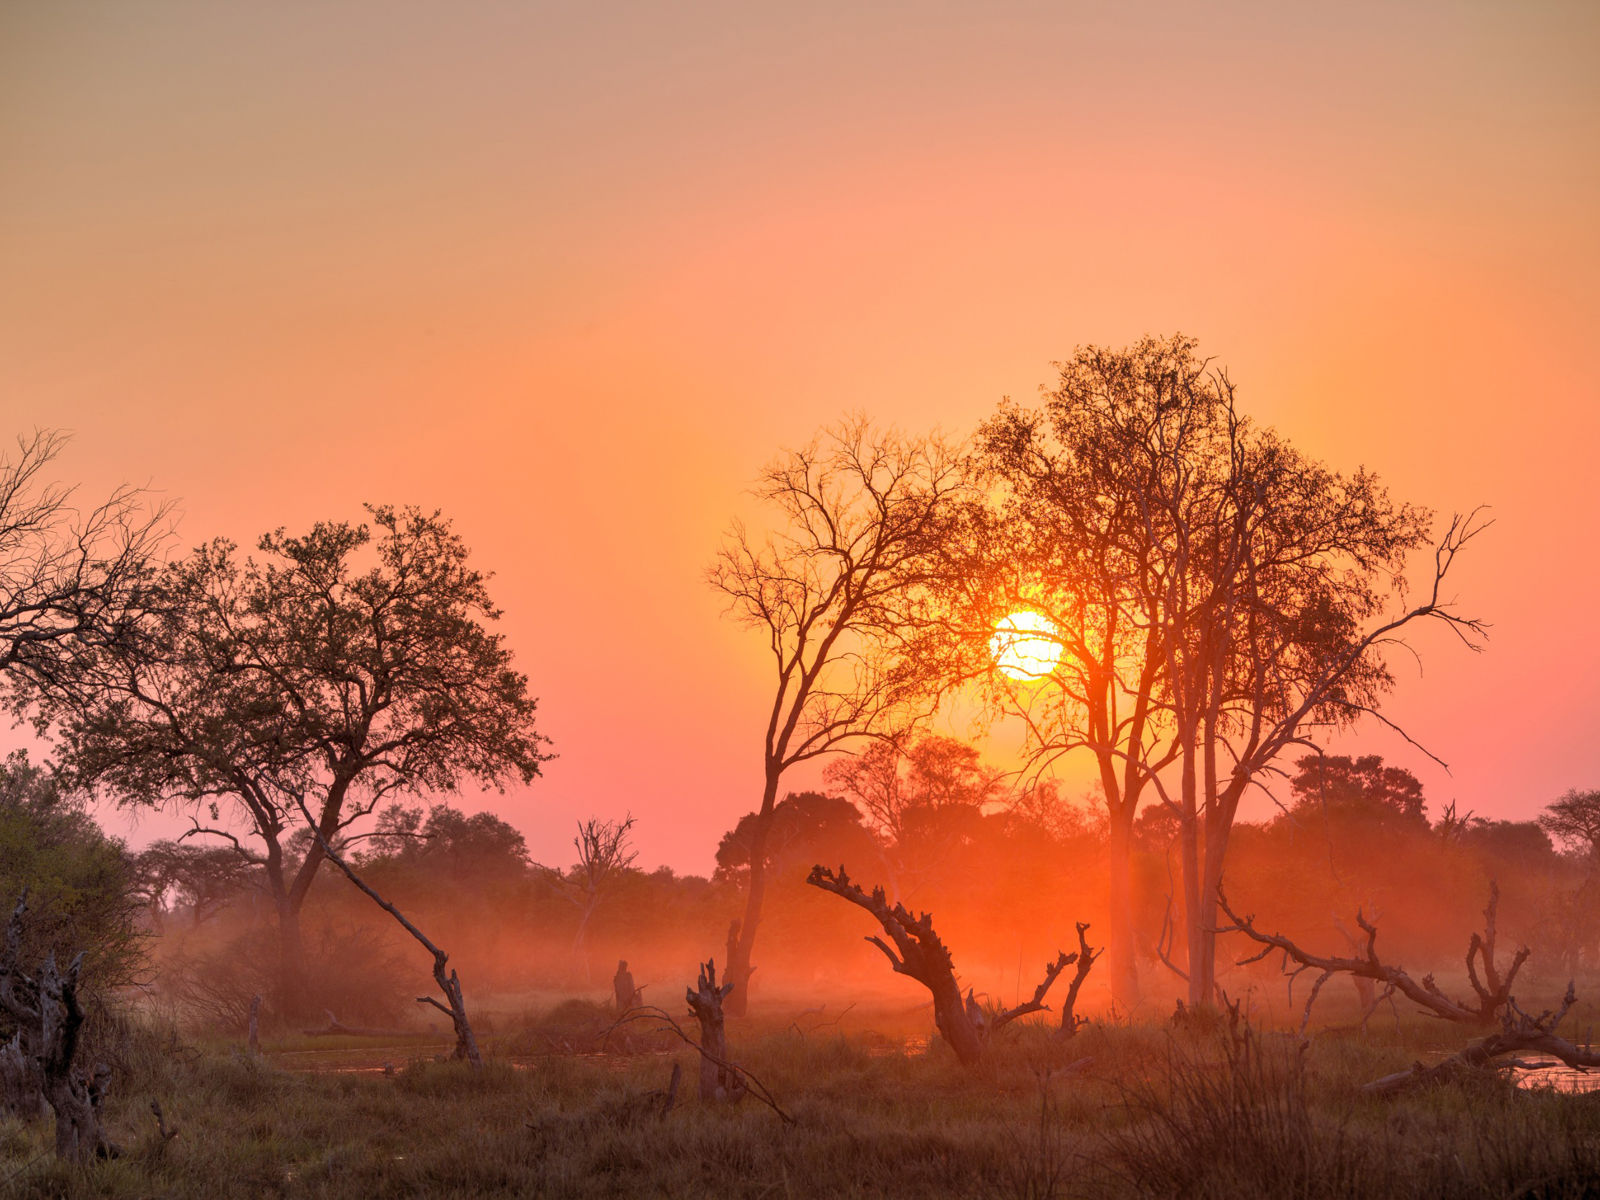 Resa till Botswana - solnedgång i savannlandskap med silhuetter av träd mot en färgrik himmel i orange och rosa nyanser.